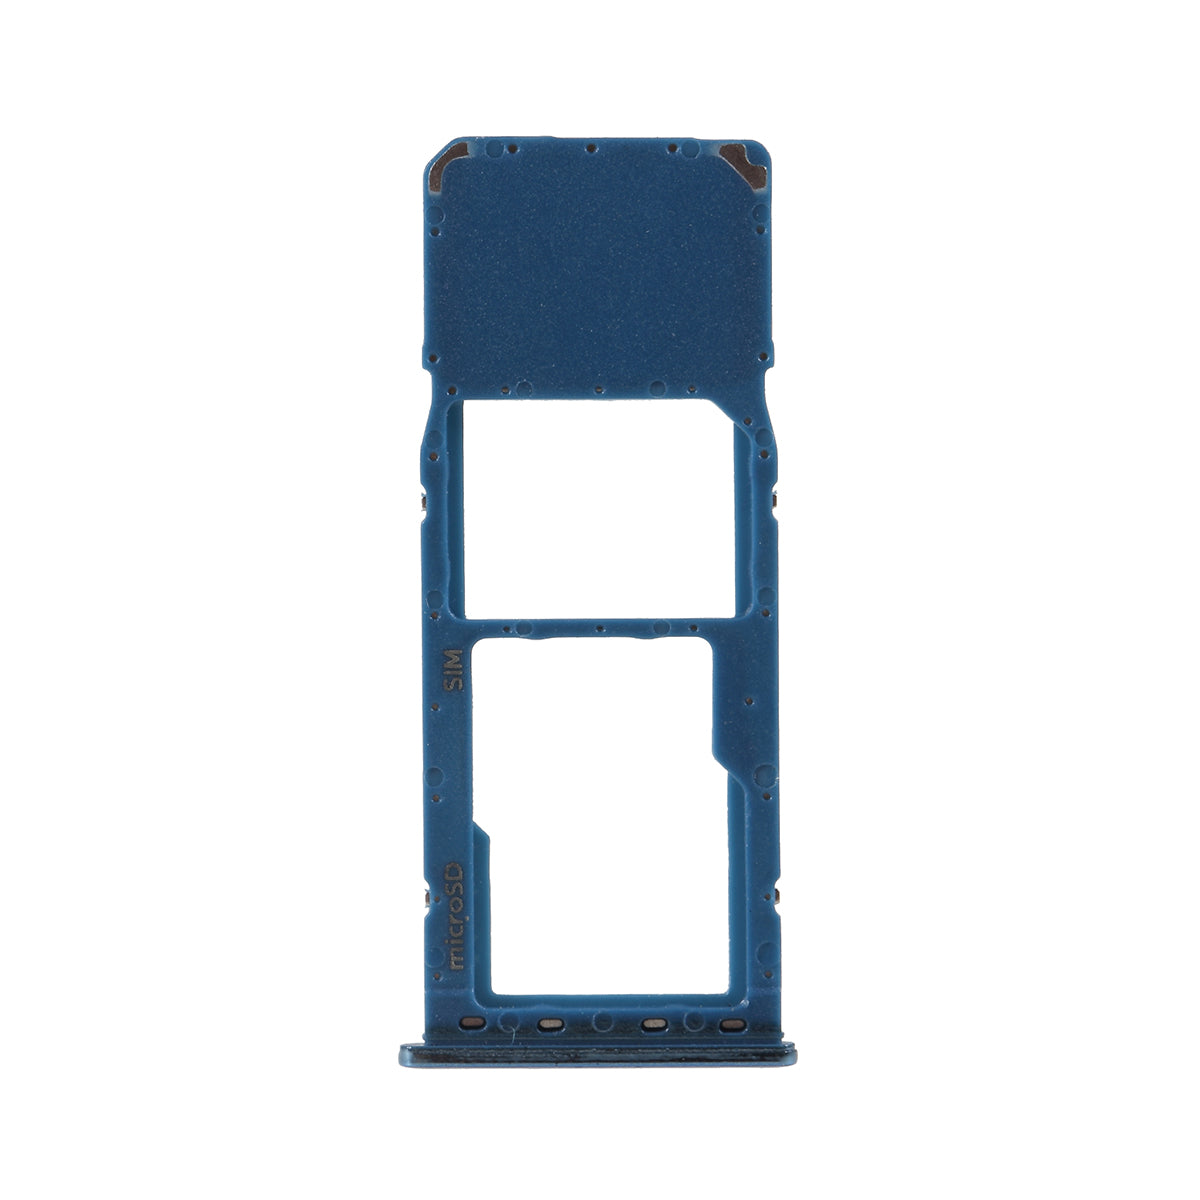 OEM Single SIM Card Tray Holder Slot for Samsung Galaxy A7 (2018) A750 - Blue